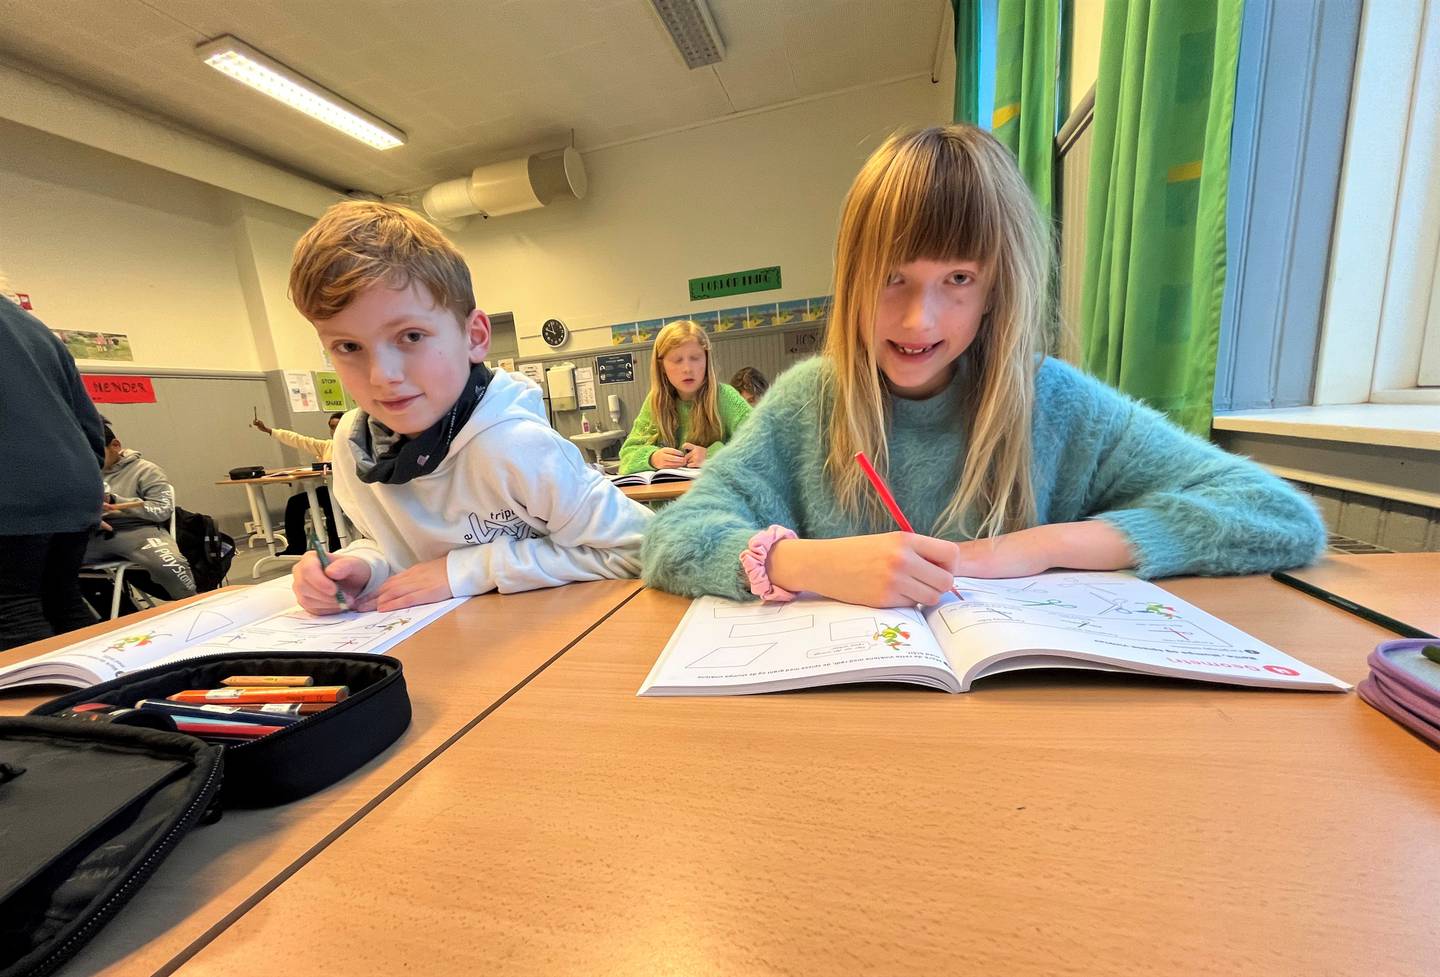 Liam og Elvira i klasse 4A ved Trara skole er samstemte: De foretrekker bøker når de skal øve matematikk.